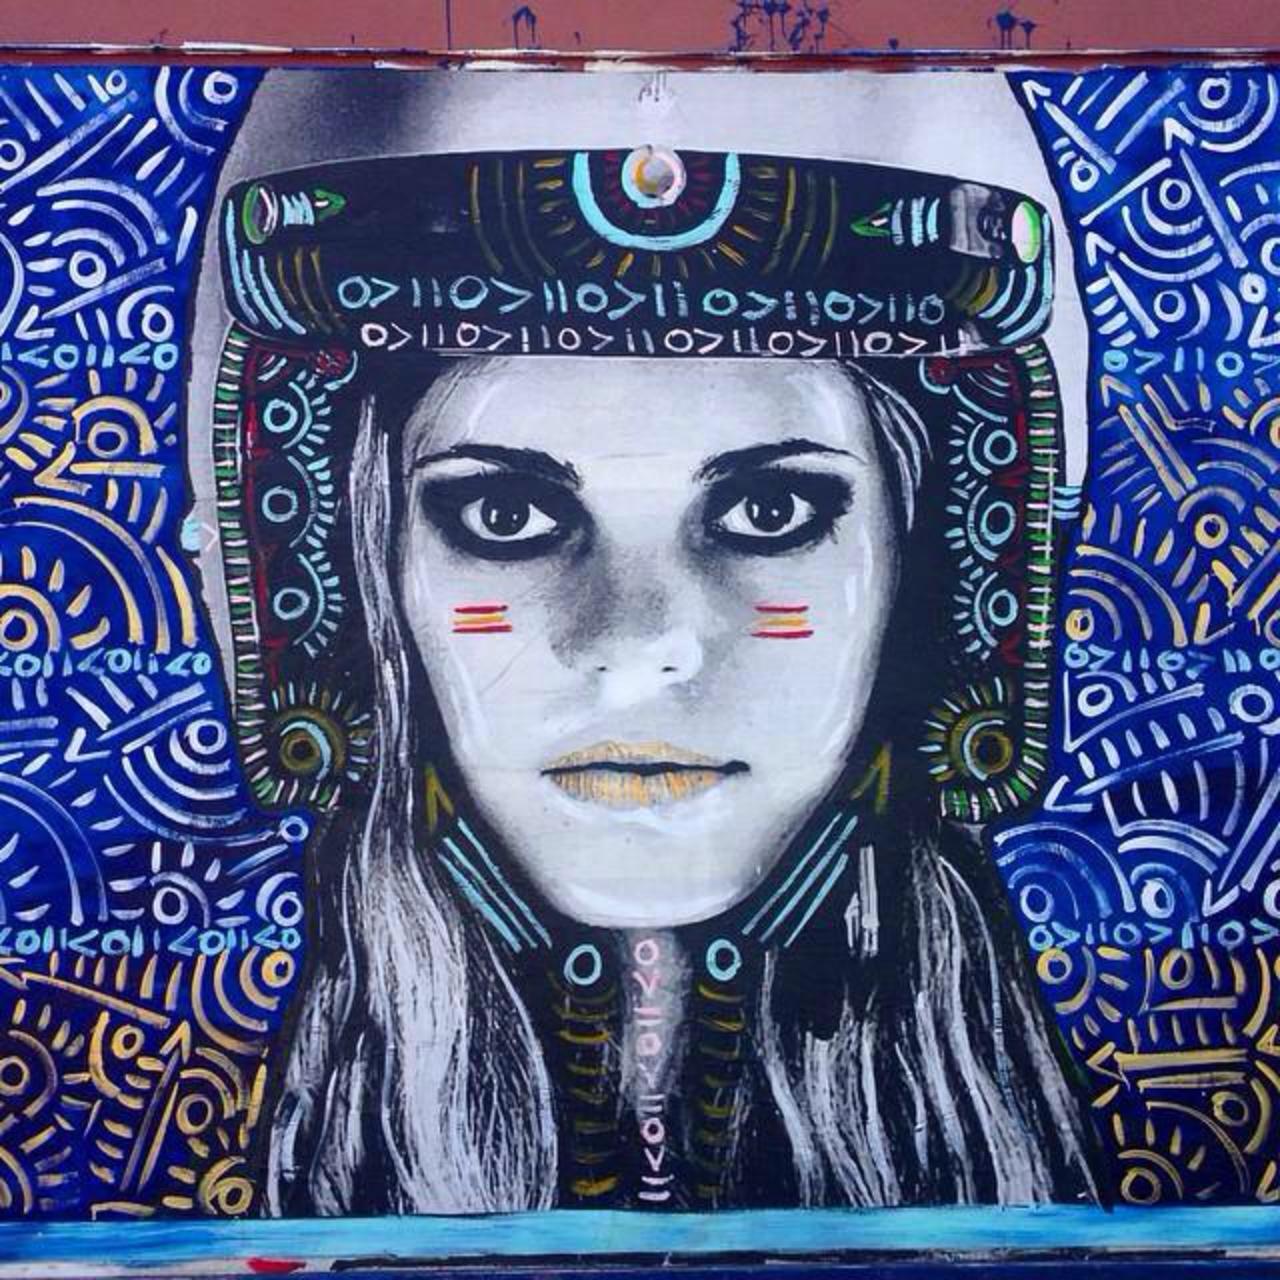 Street Art by Kelcey Fisher in LA
Photo by djcatnap

#art #arte #graffiti #streetart http://t.co/B14JurGtI1